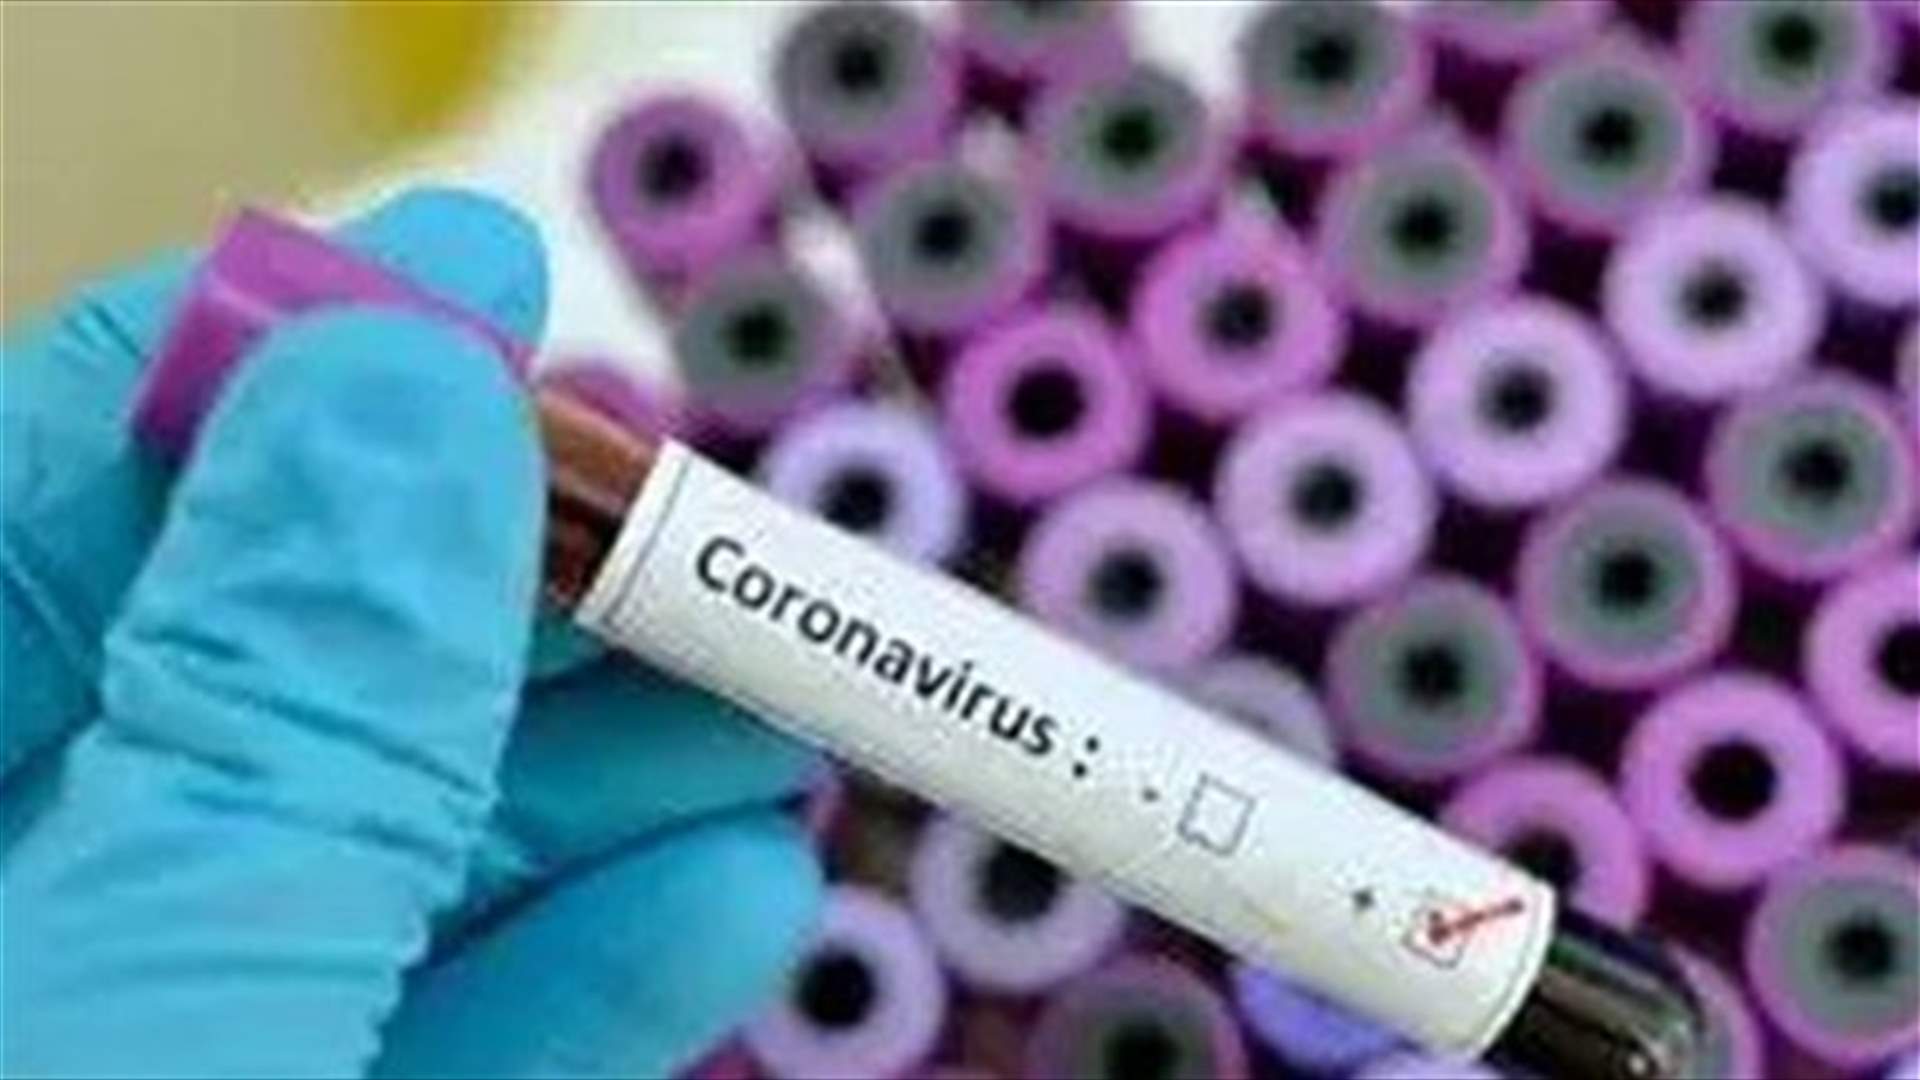 Lebanese doctor dies of Coronavirus in Sao Paulo